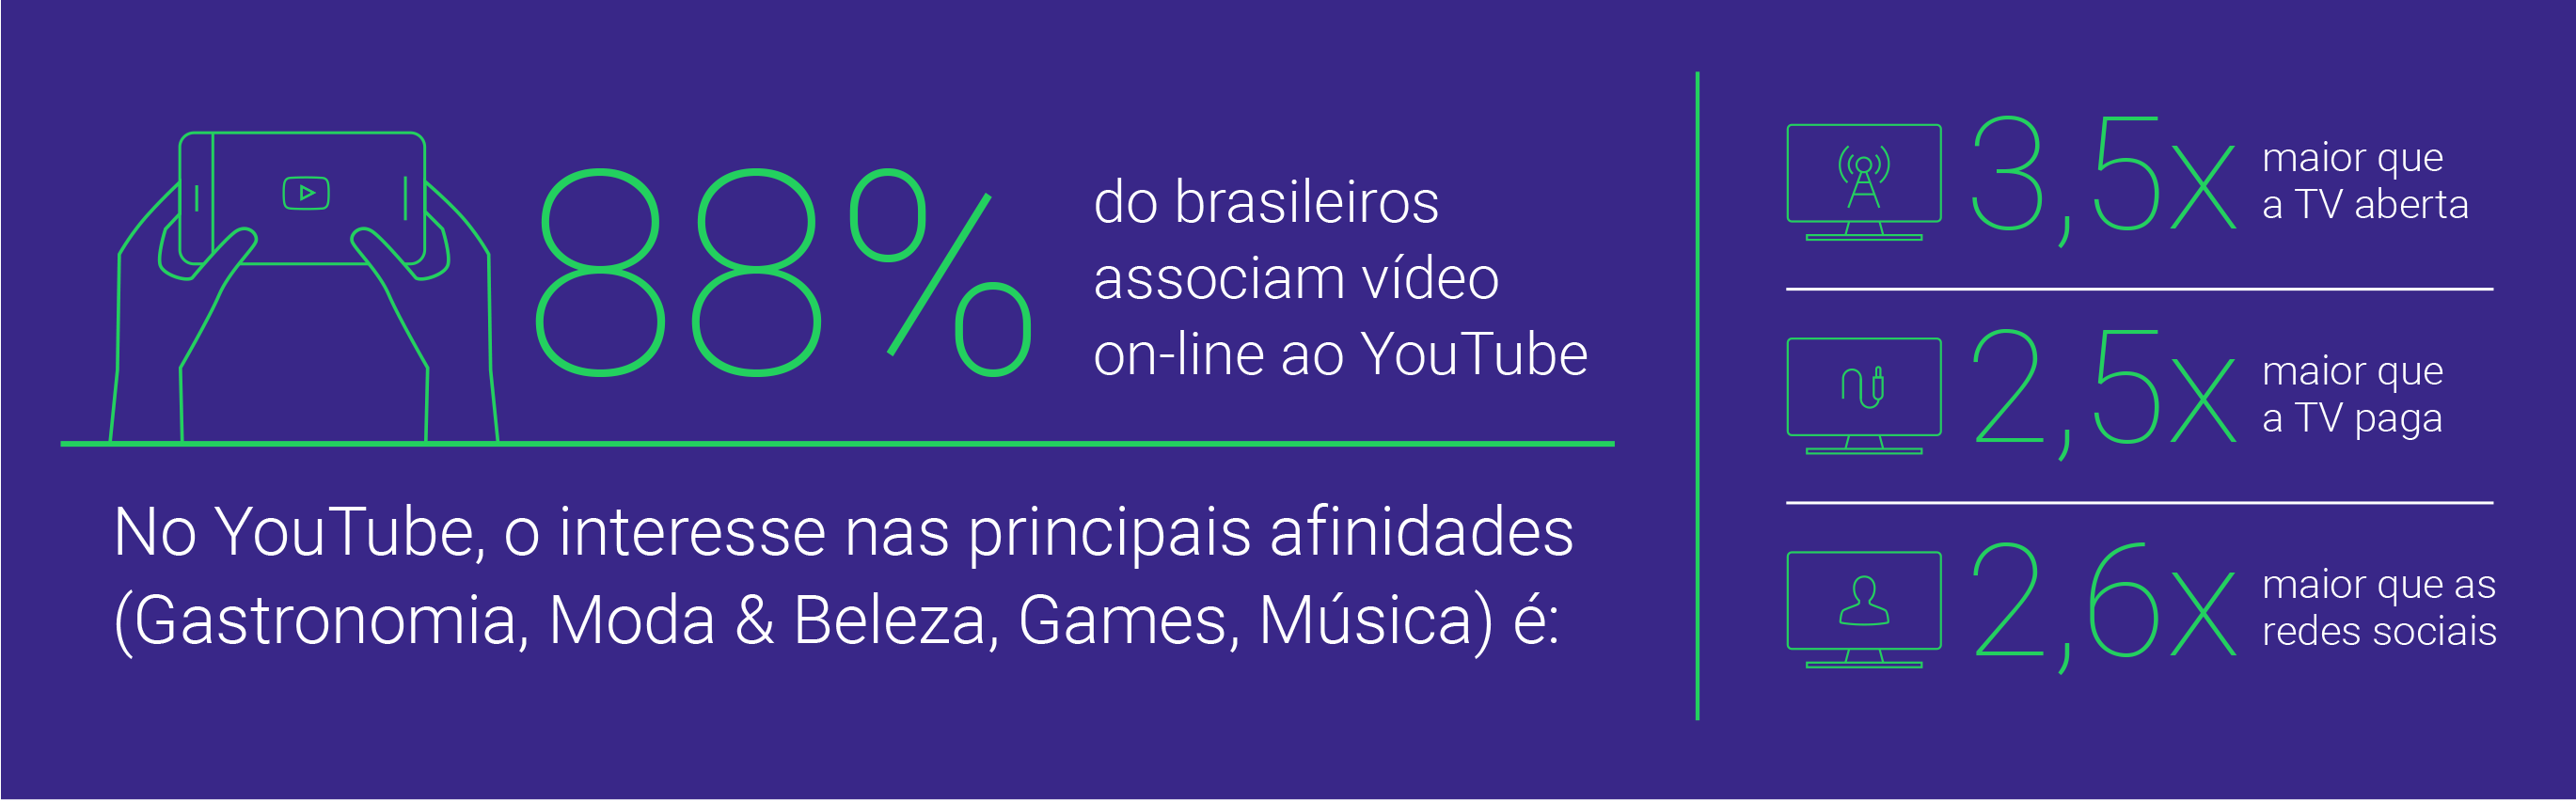 Pesquisa Video Viewers 2016: Como o brasileiro assistiu a vídeos